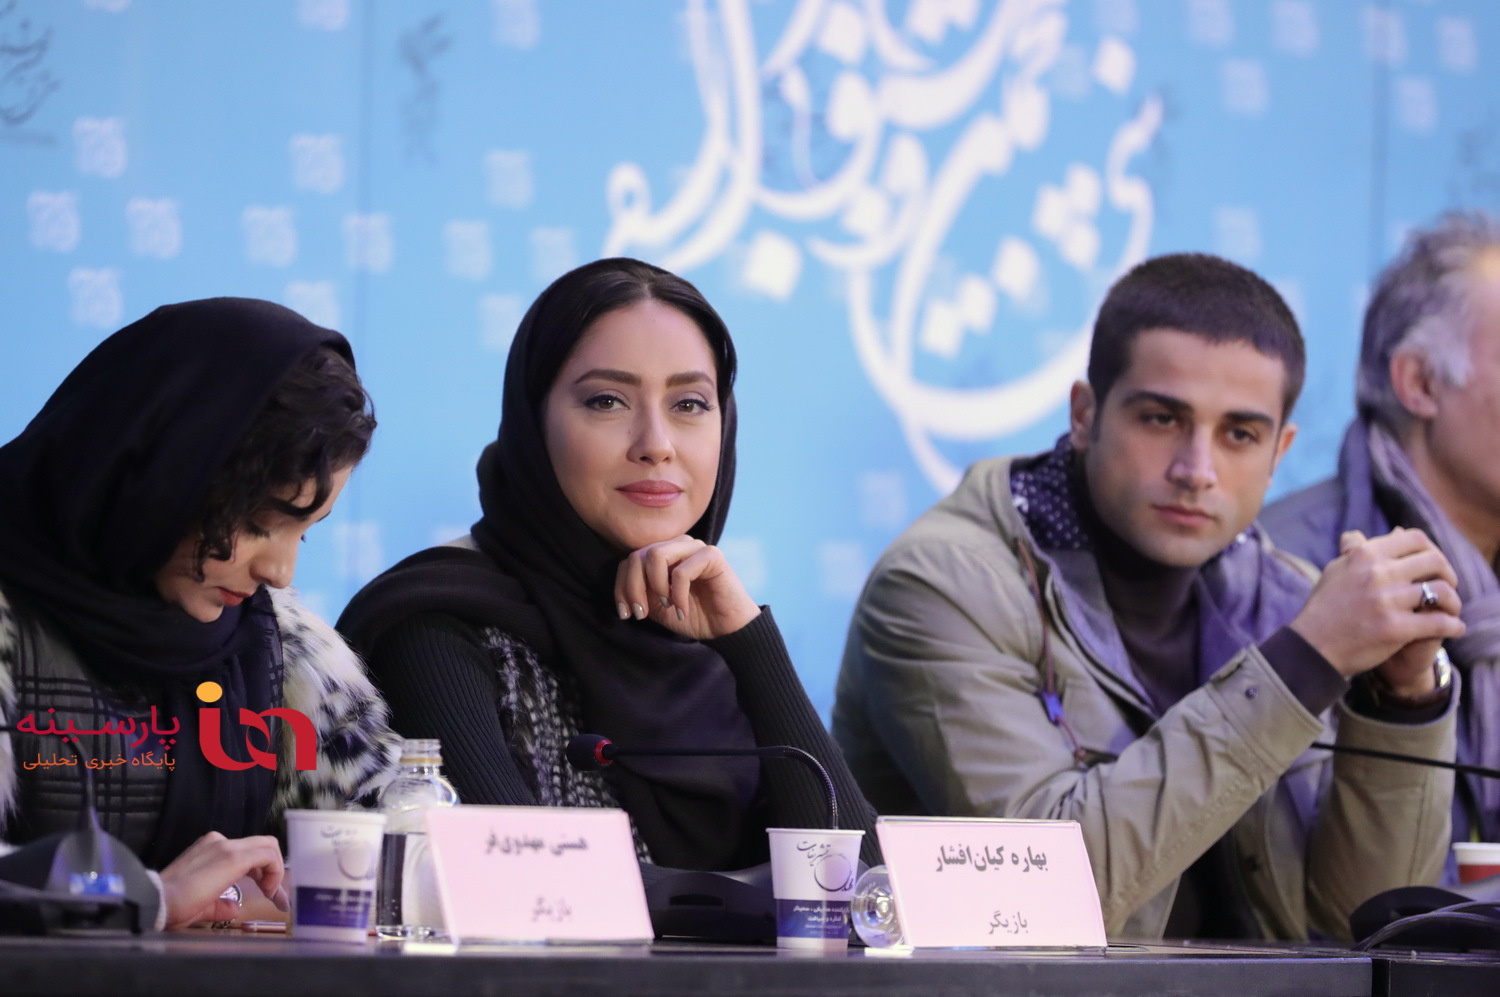 متن و حواشی فیلم های روز نهم کاخ جشنواره در قاب تصویر